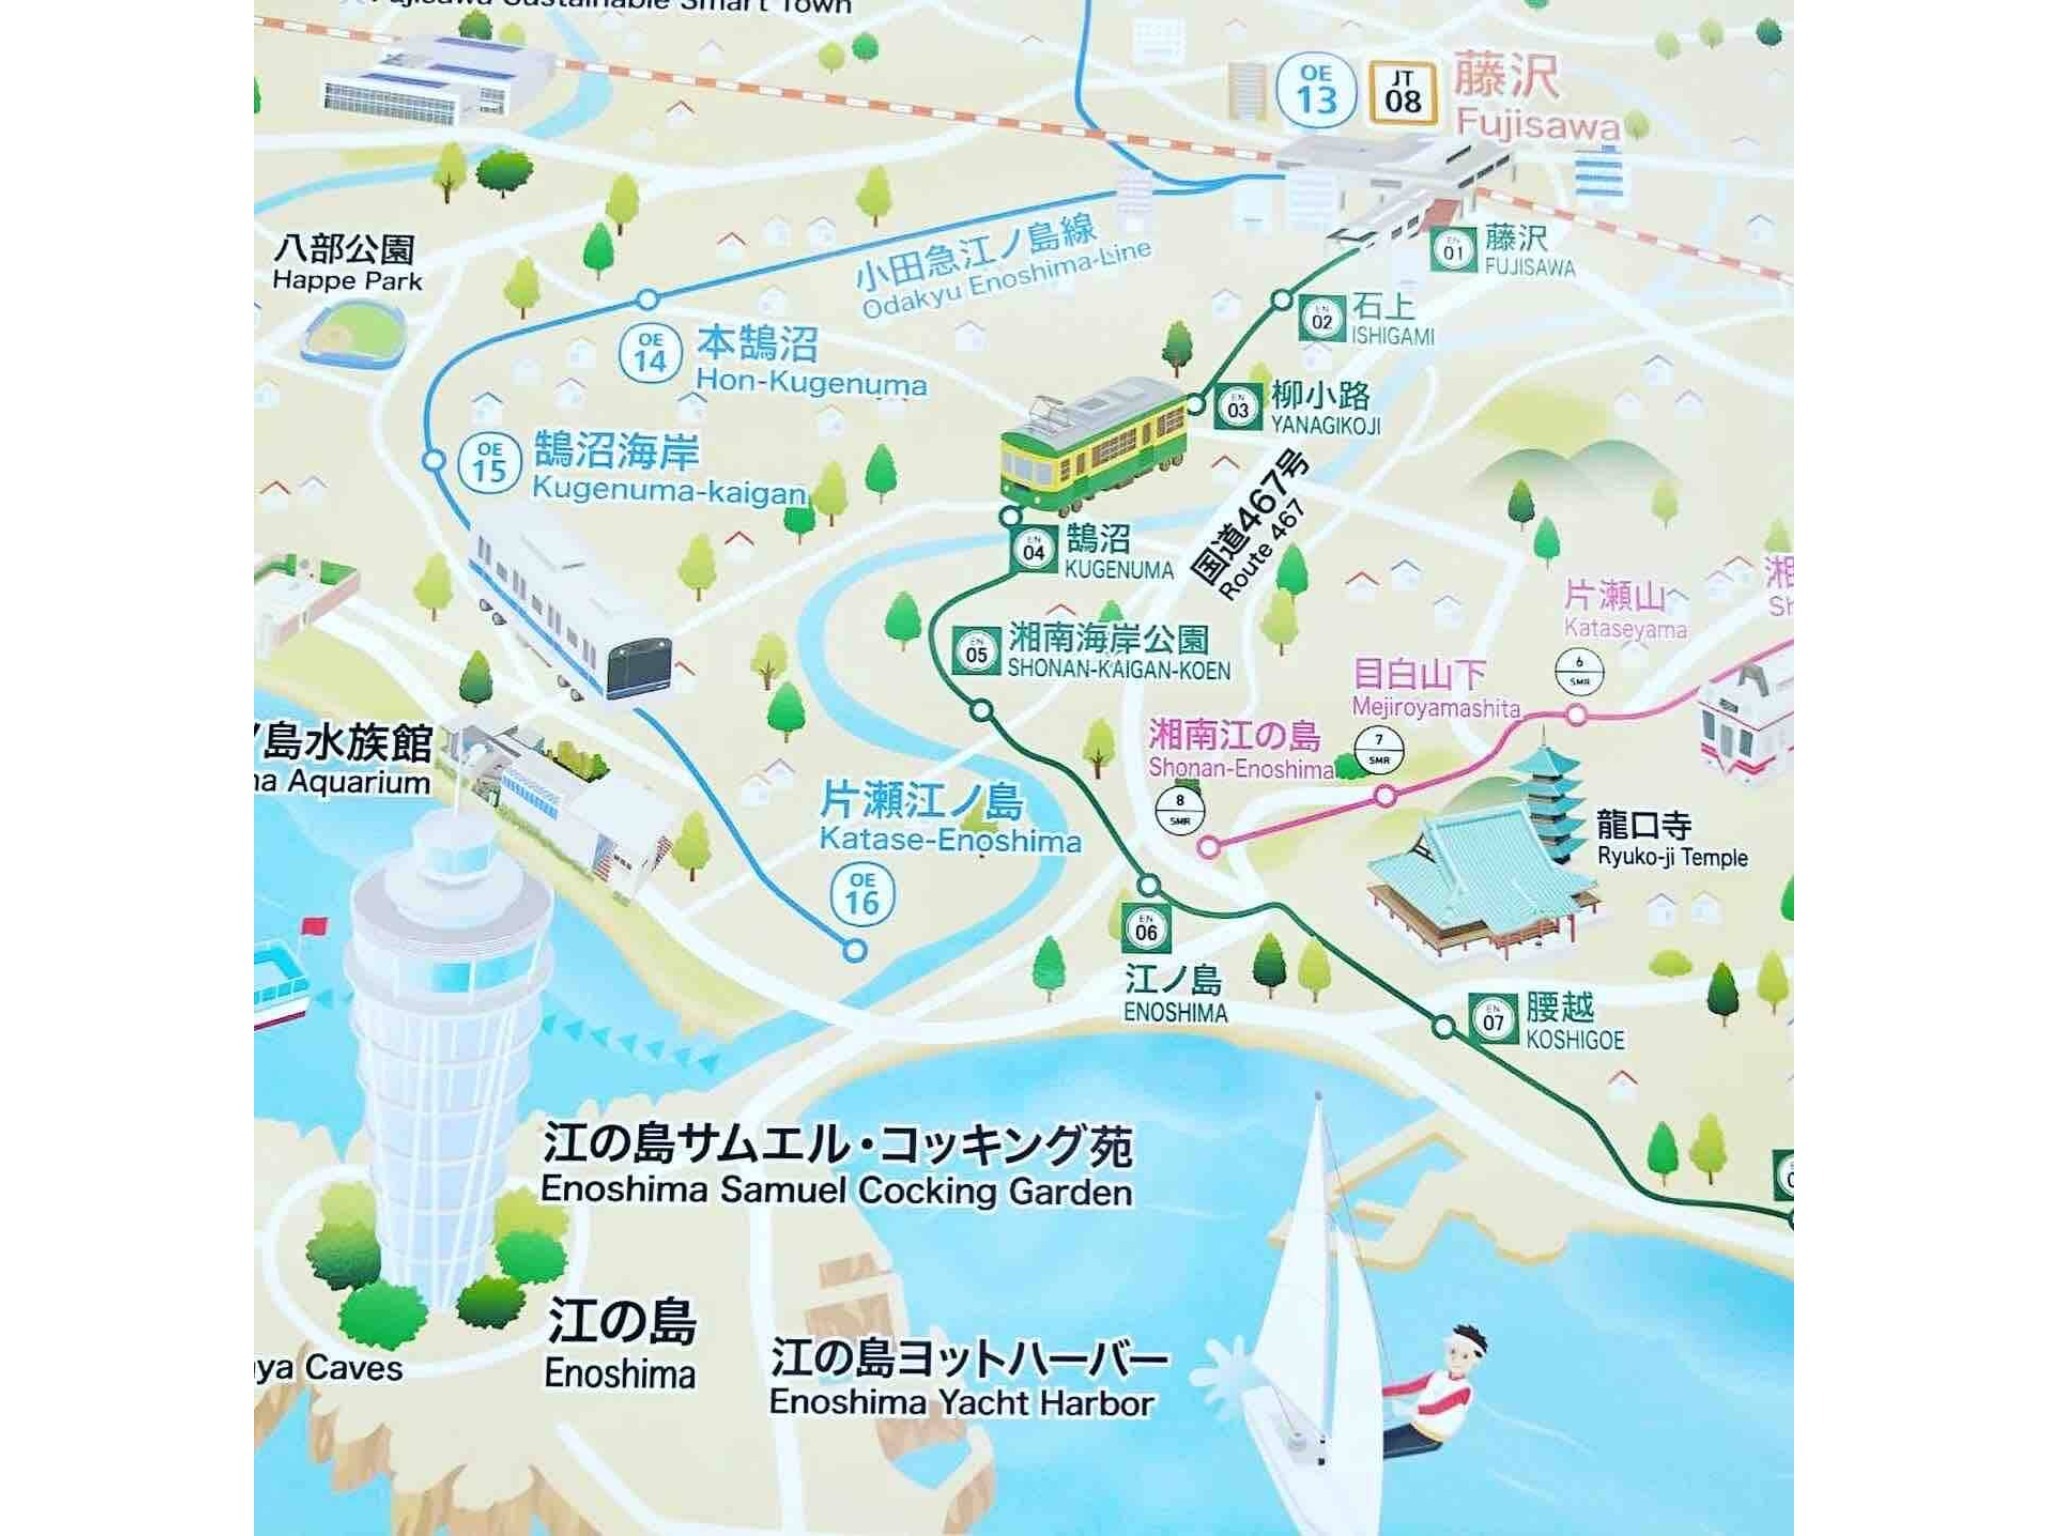 小田急片瀬江ノ島駅から徒歩2分!秋の江ノ島を楽しもう!!︎